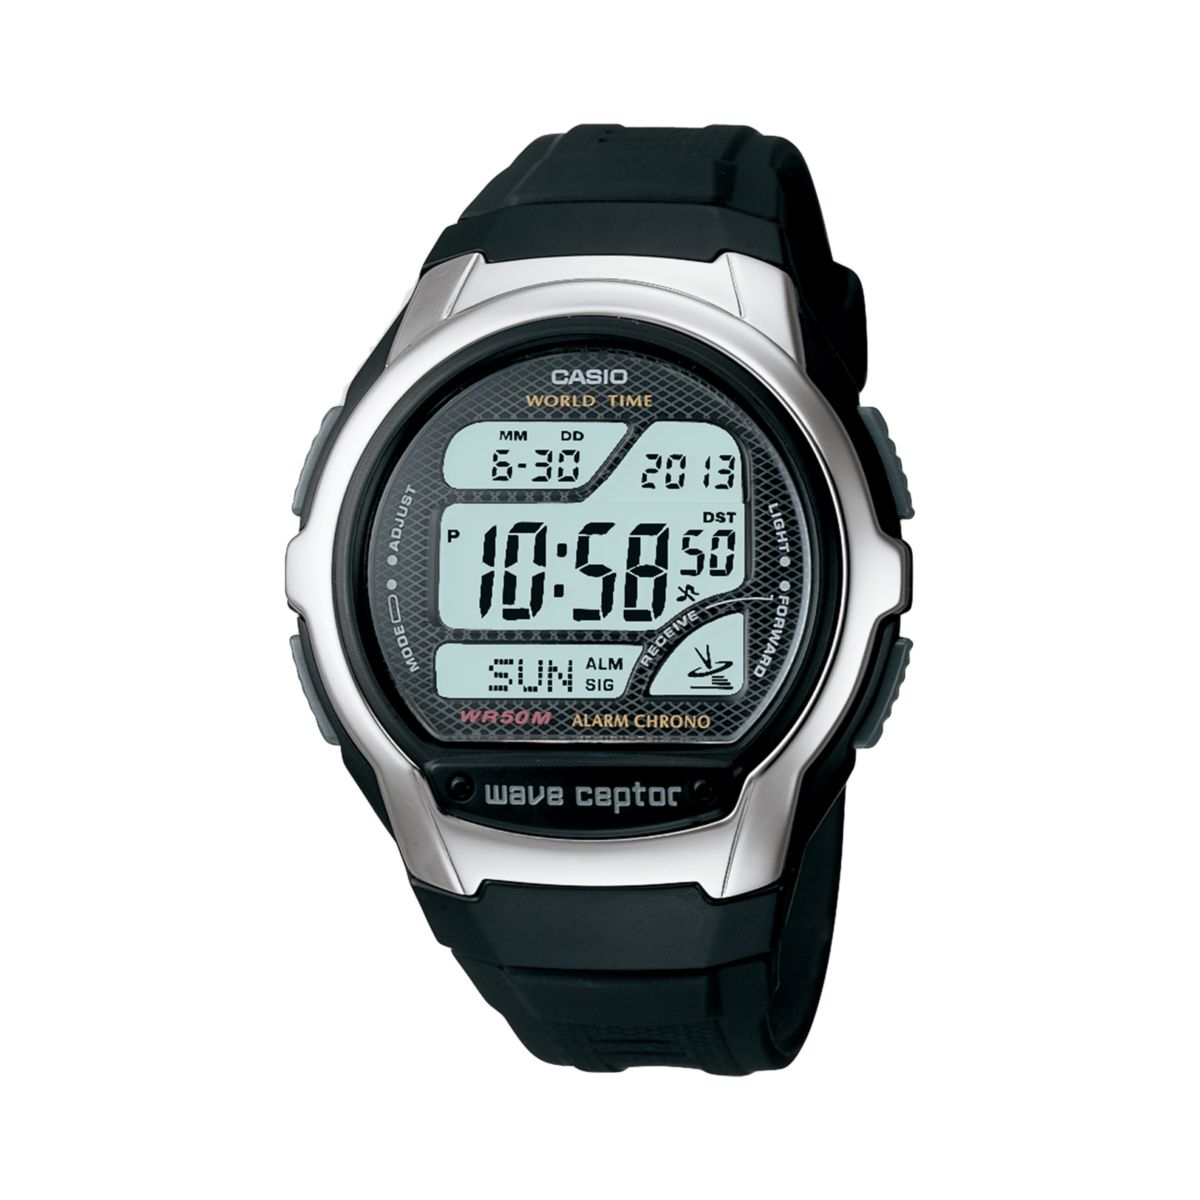 Мужские часы Casio Wave Ceptor Atomic с цифровым хронографом - WV58A-1AV Casio